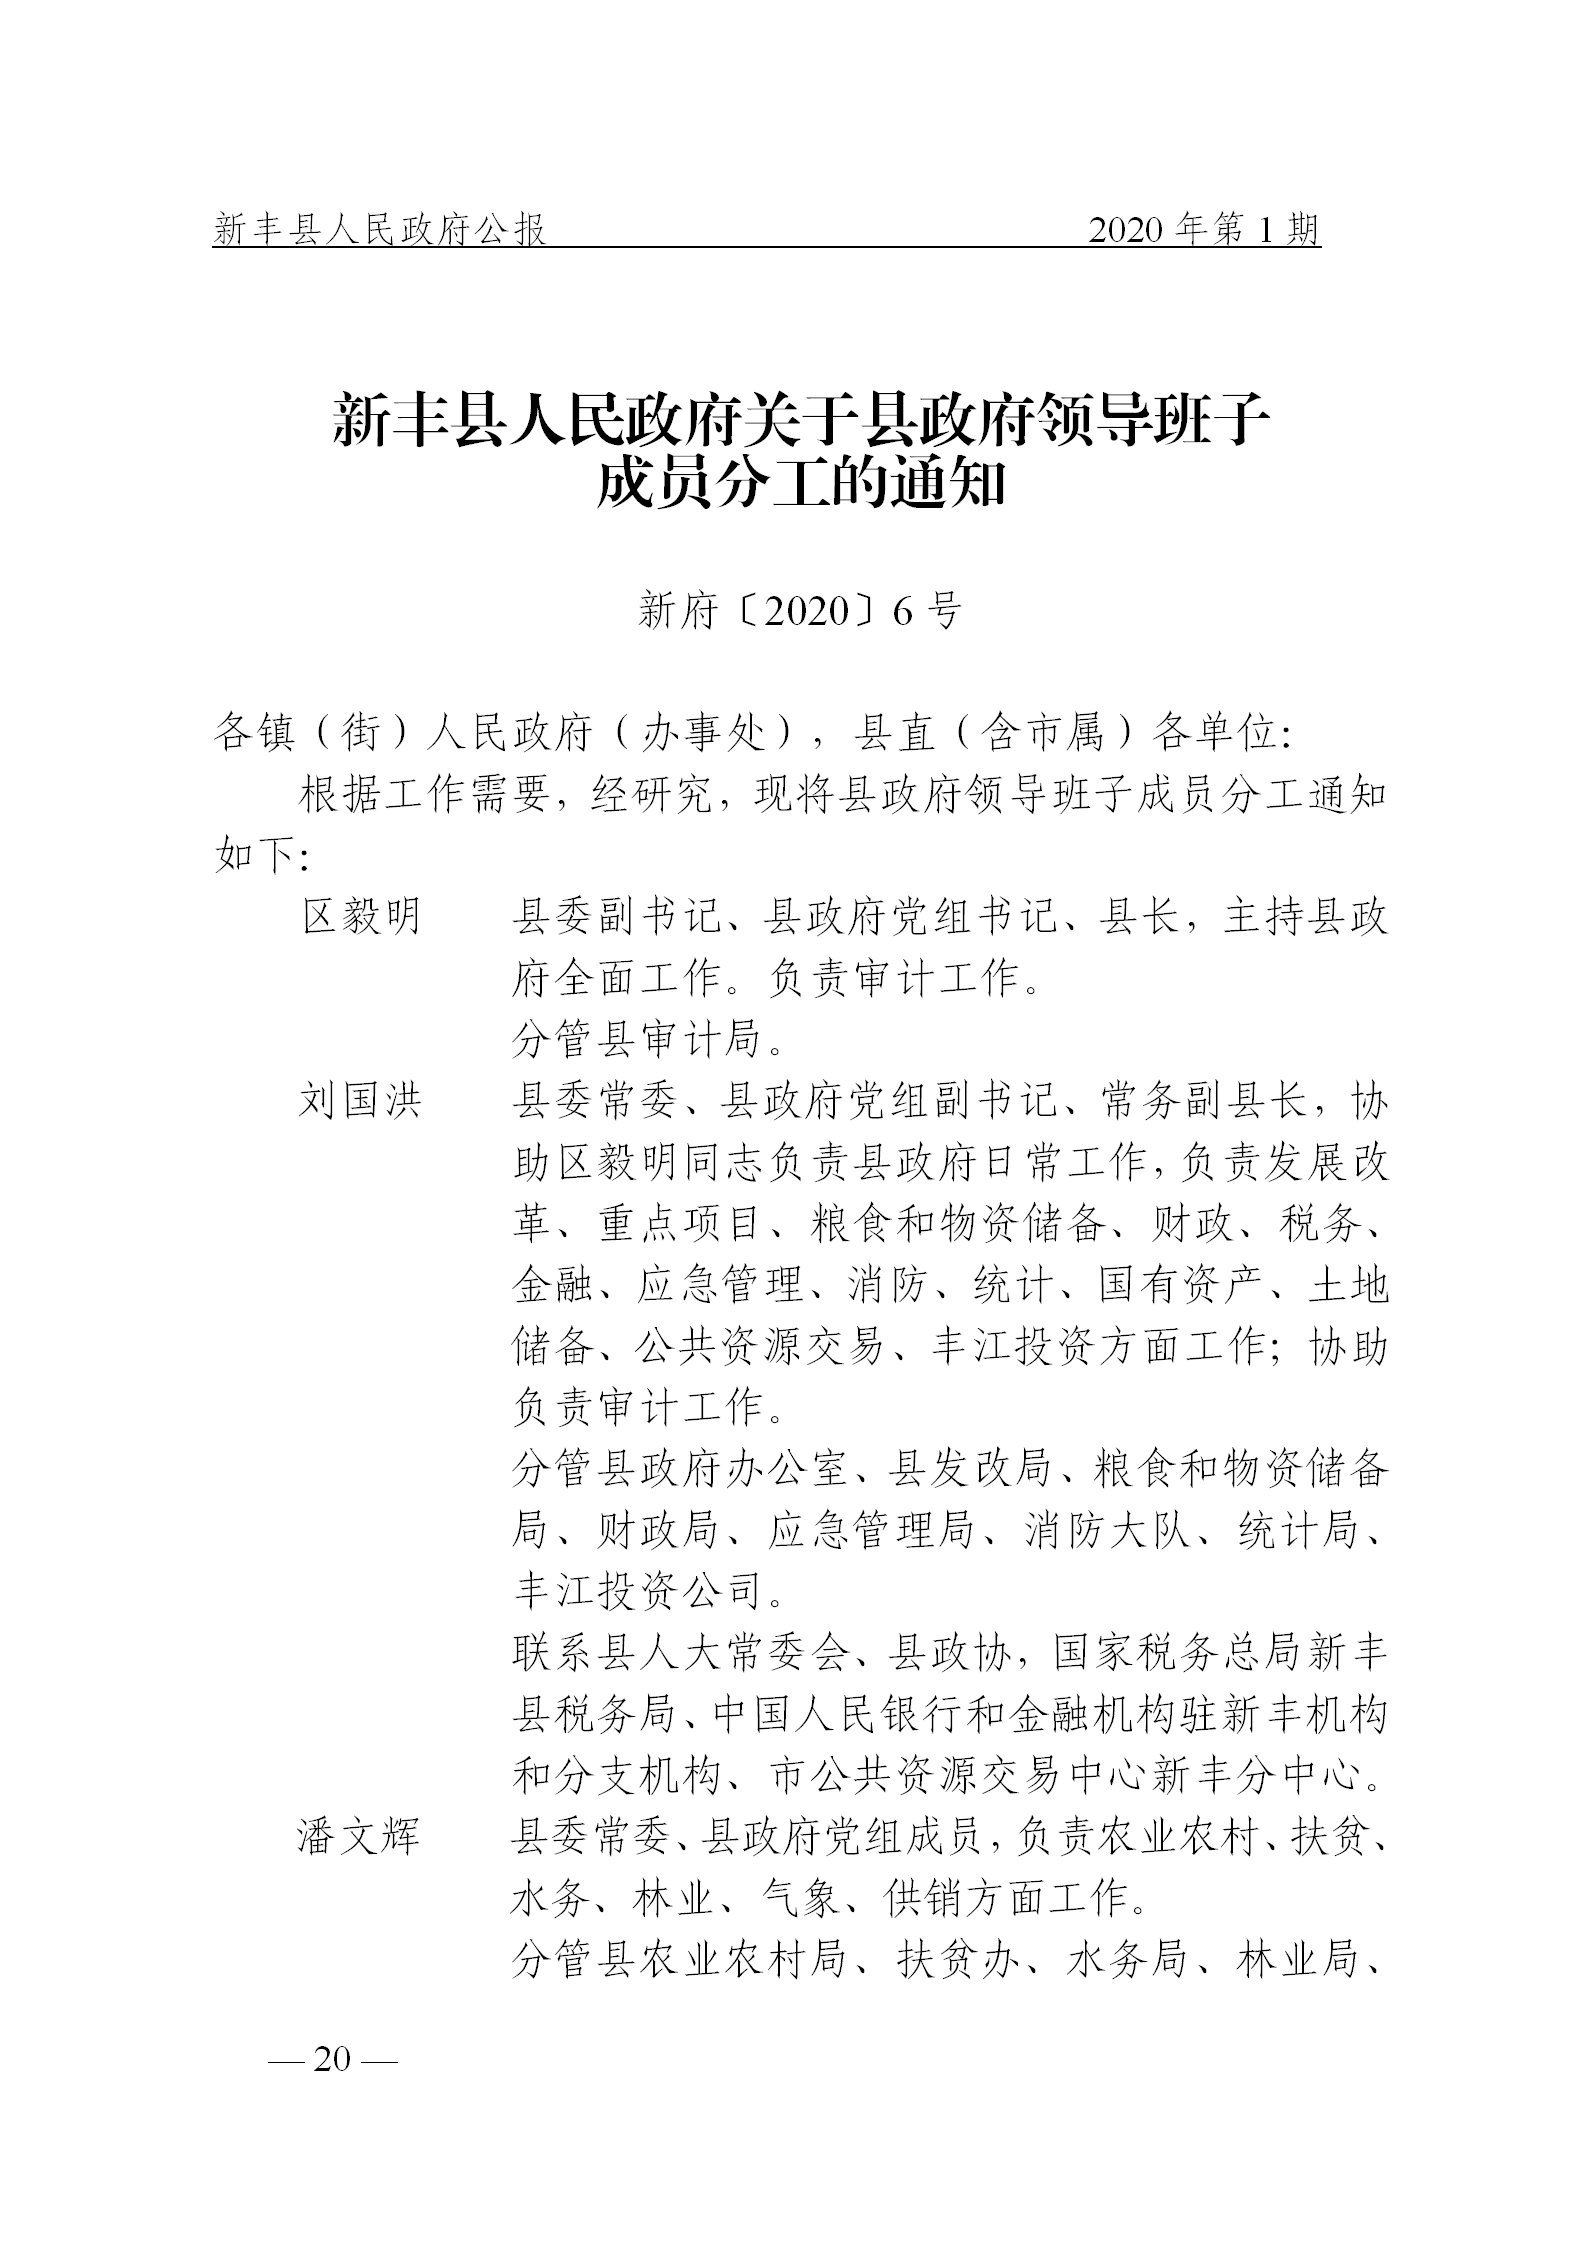 《新丰县人民政府公报》2020年第1期(1)_20.png